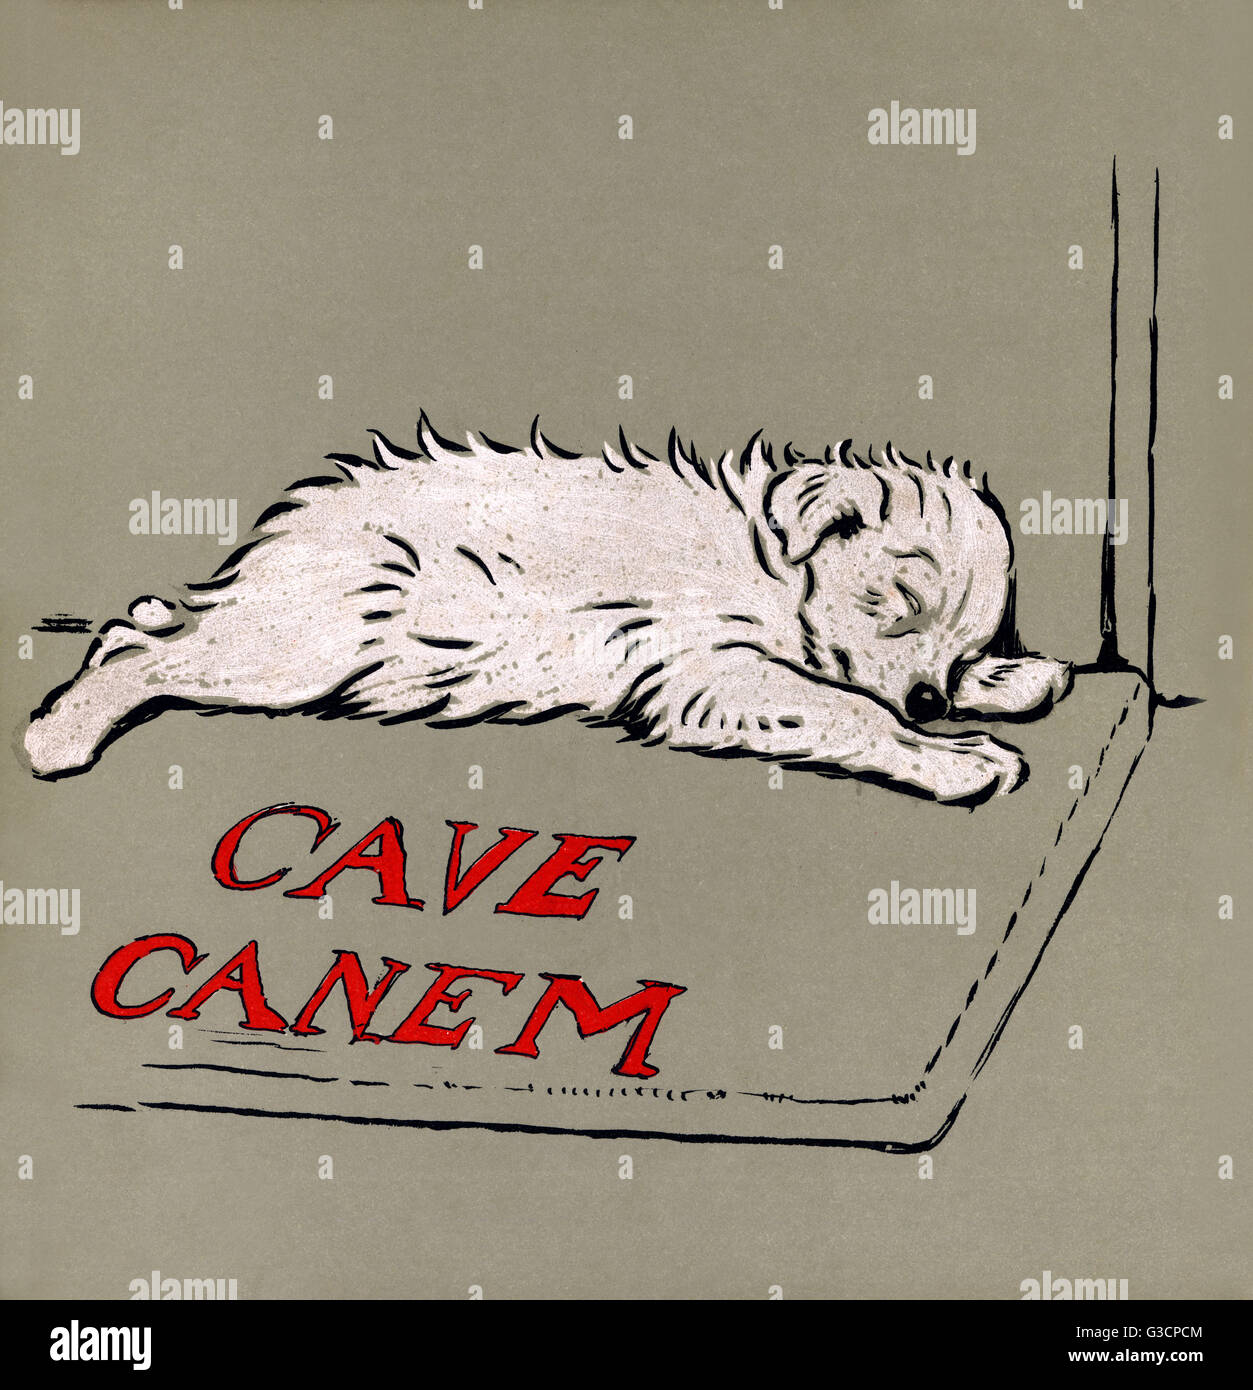 Ilustración por Cecil Aldin, El cachorro Libro Blanco. Bola de nieve se va a dormir al final de un ajetreado día en una estera etiquetados Cave Canem (cuidado con el perro). Fecha: 1909 Foto de stock